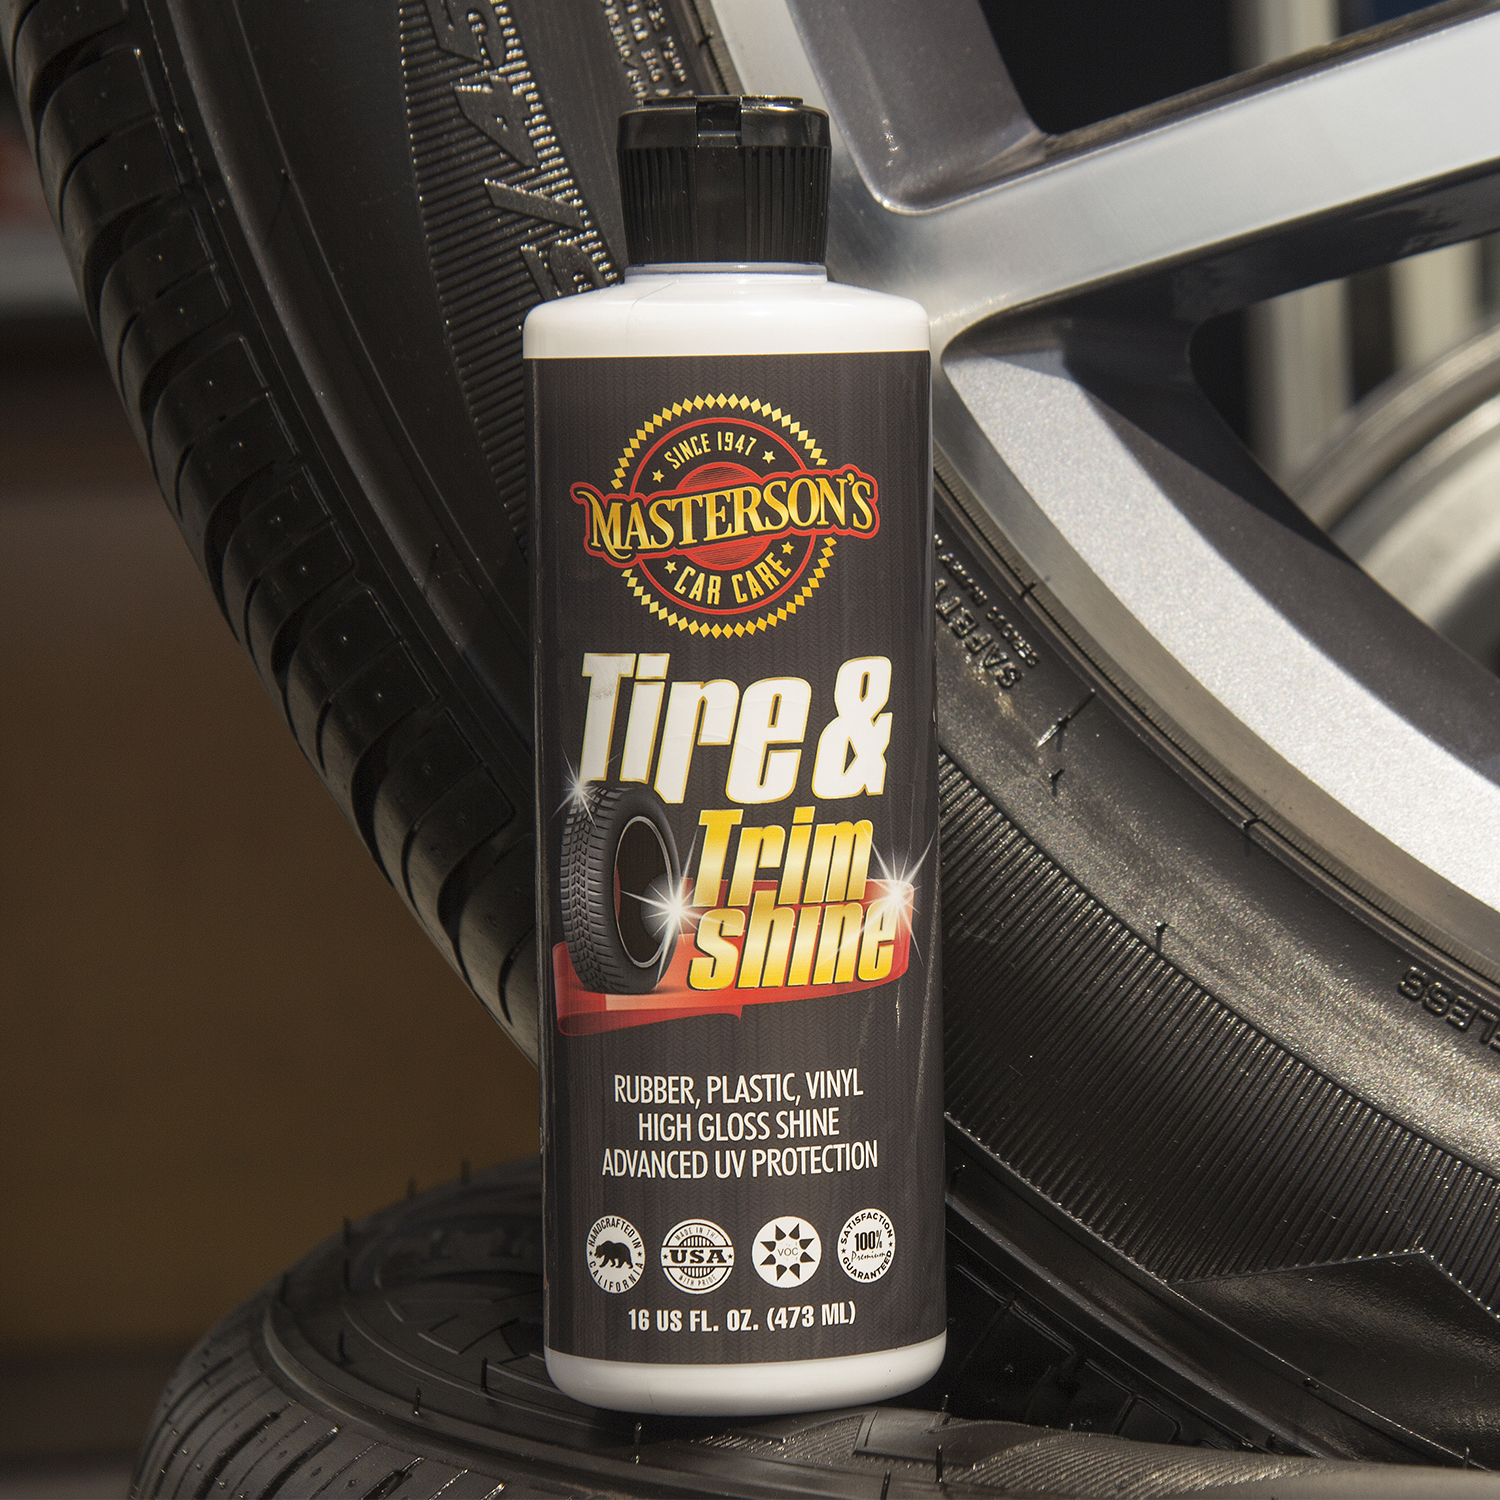 Spray Shine Tire & Trim Protectant 16oz